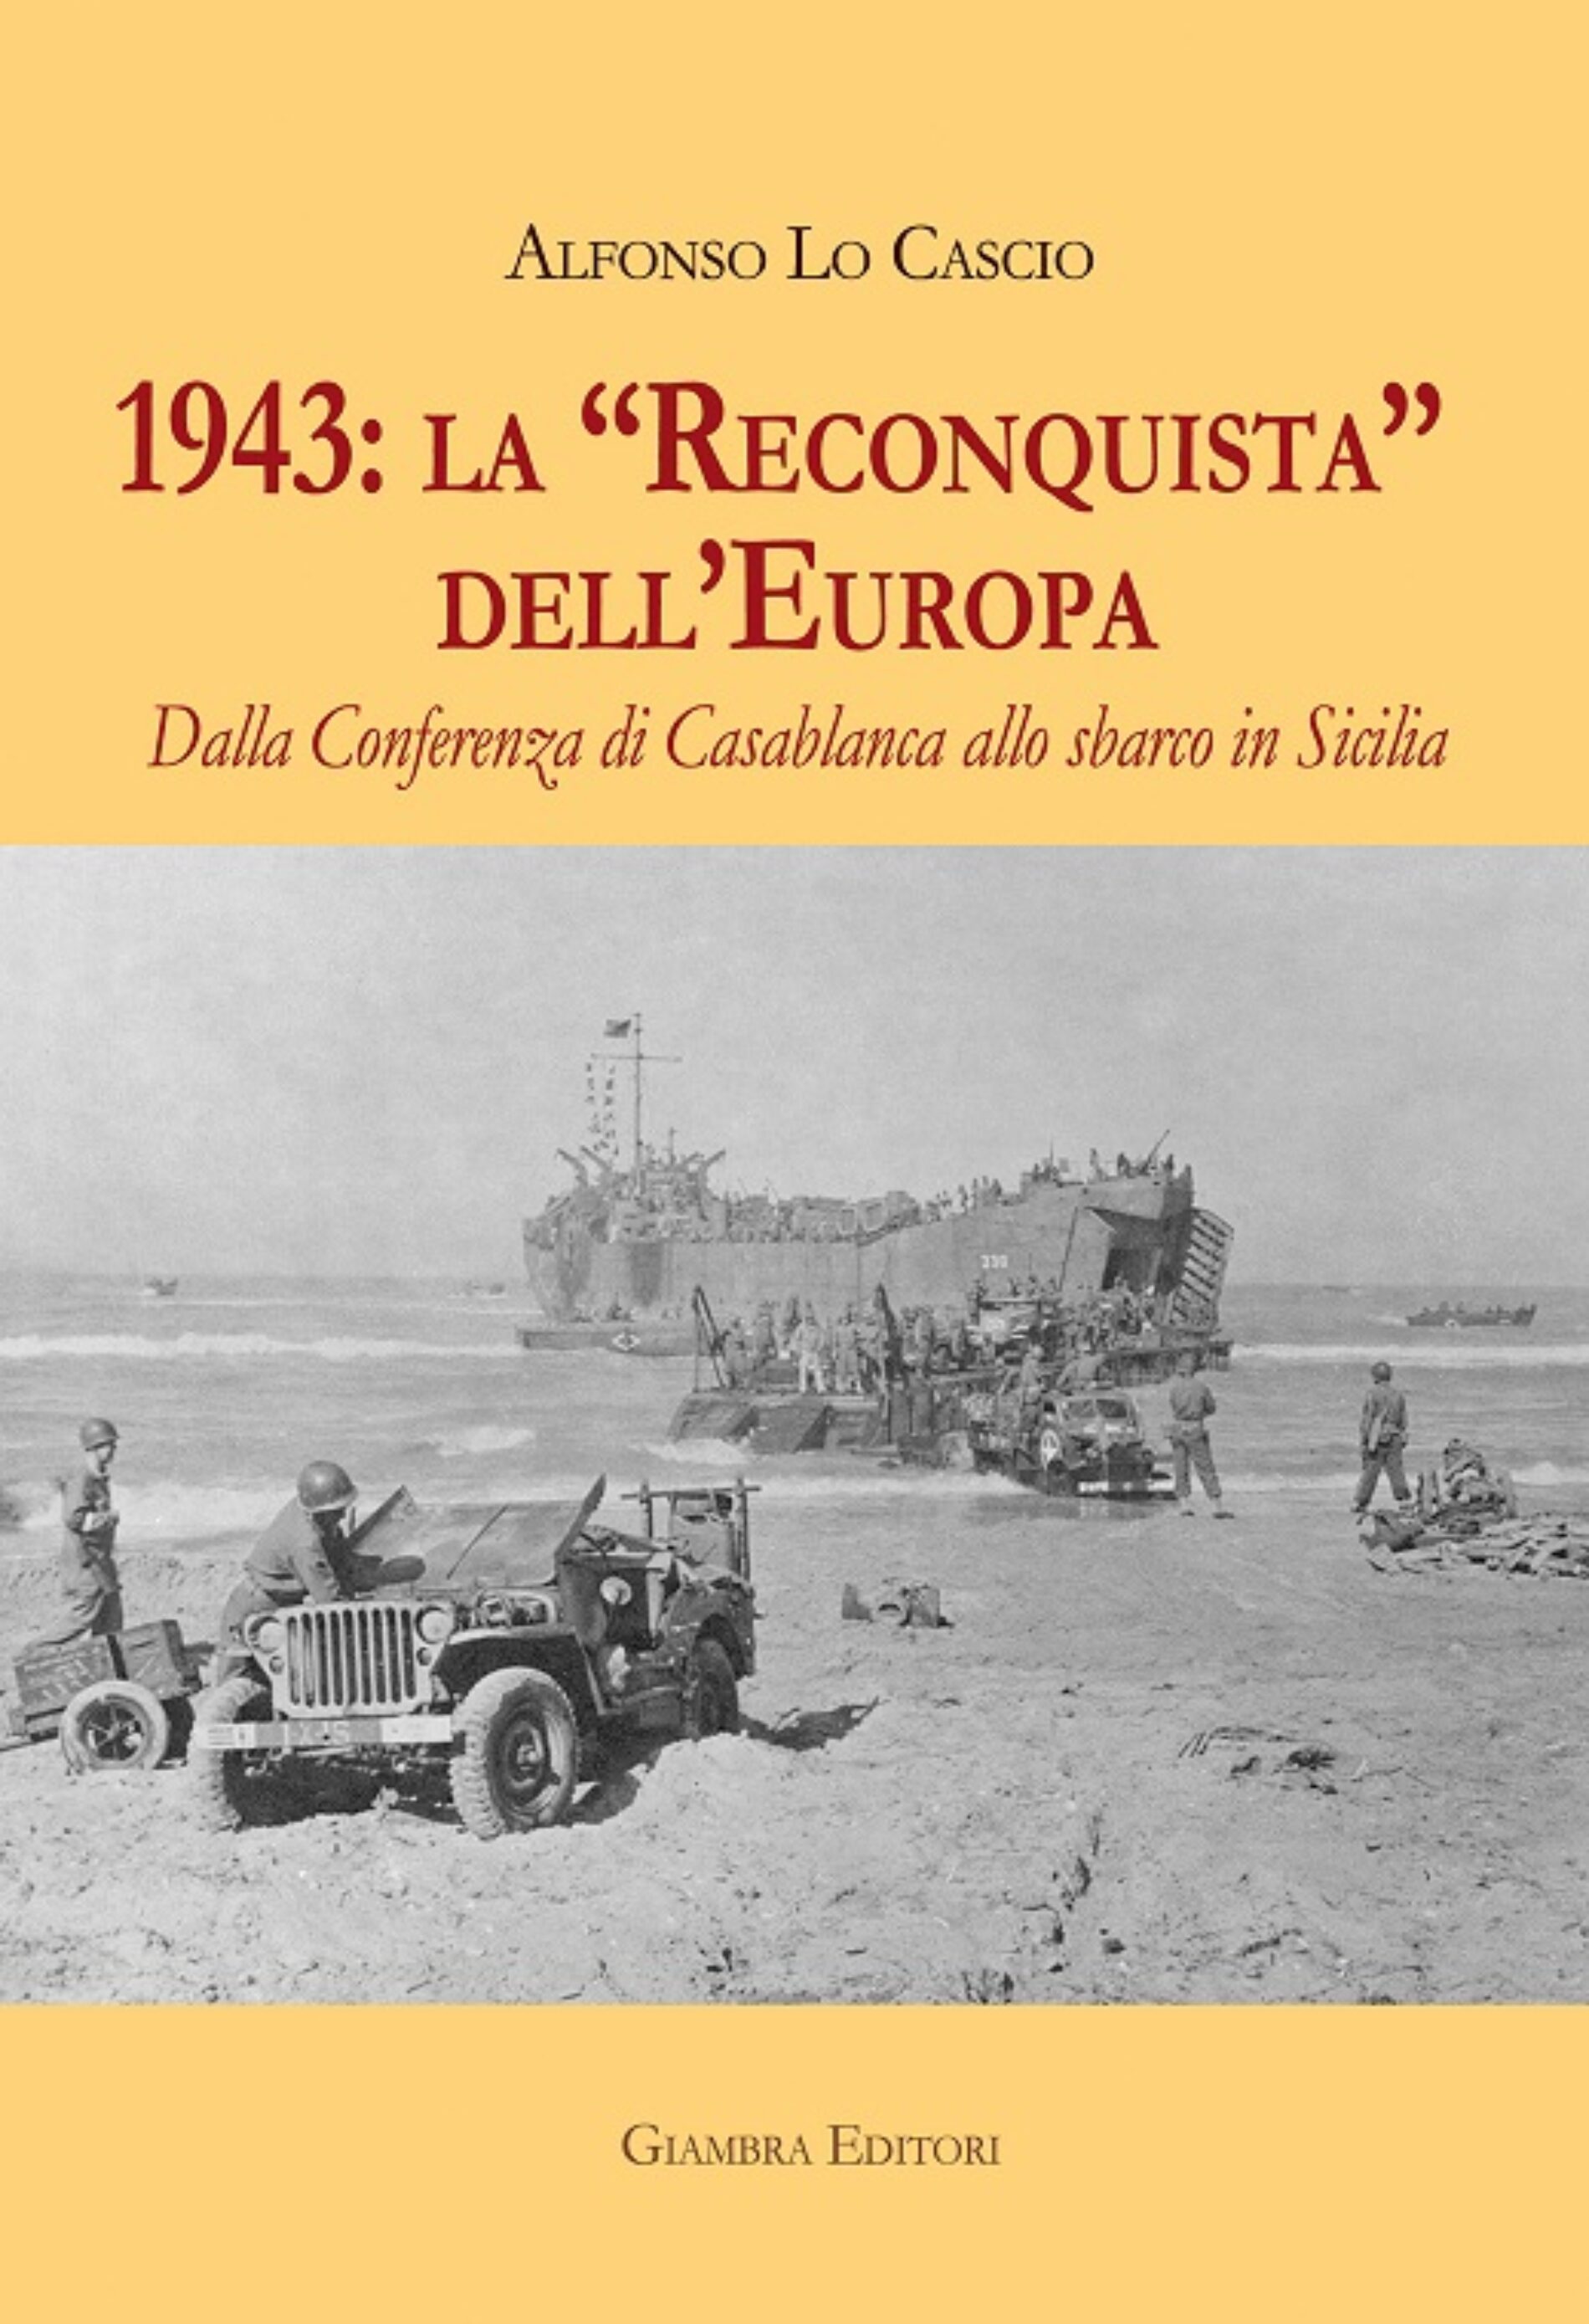 Si presenta al Salone del Libro di Torino il volume di Alfonso Lo Cascio “1943: la Reconquista dell’Europa”